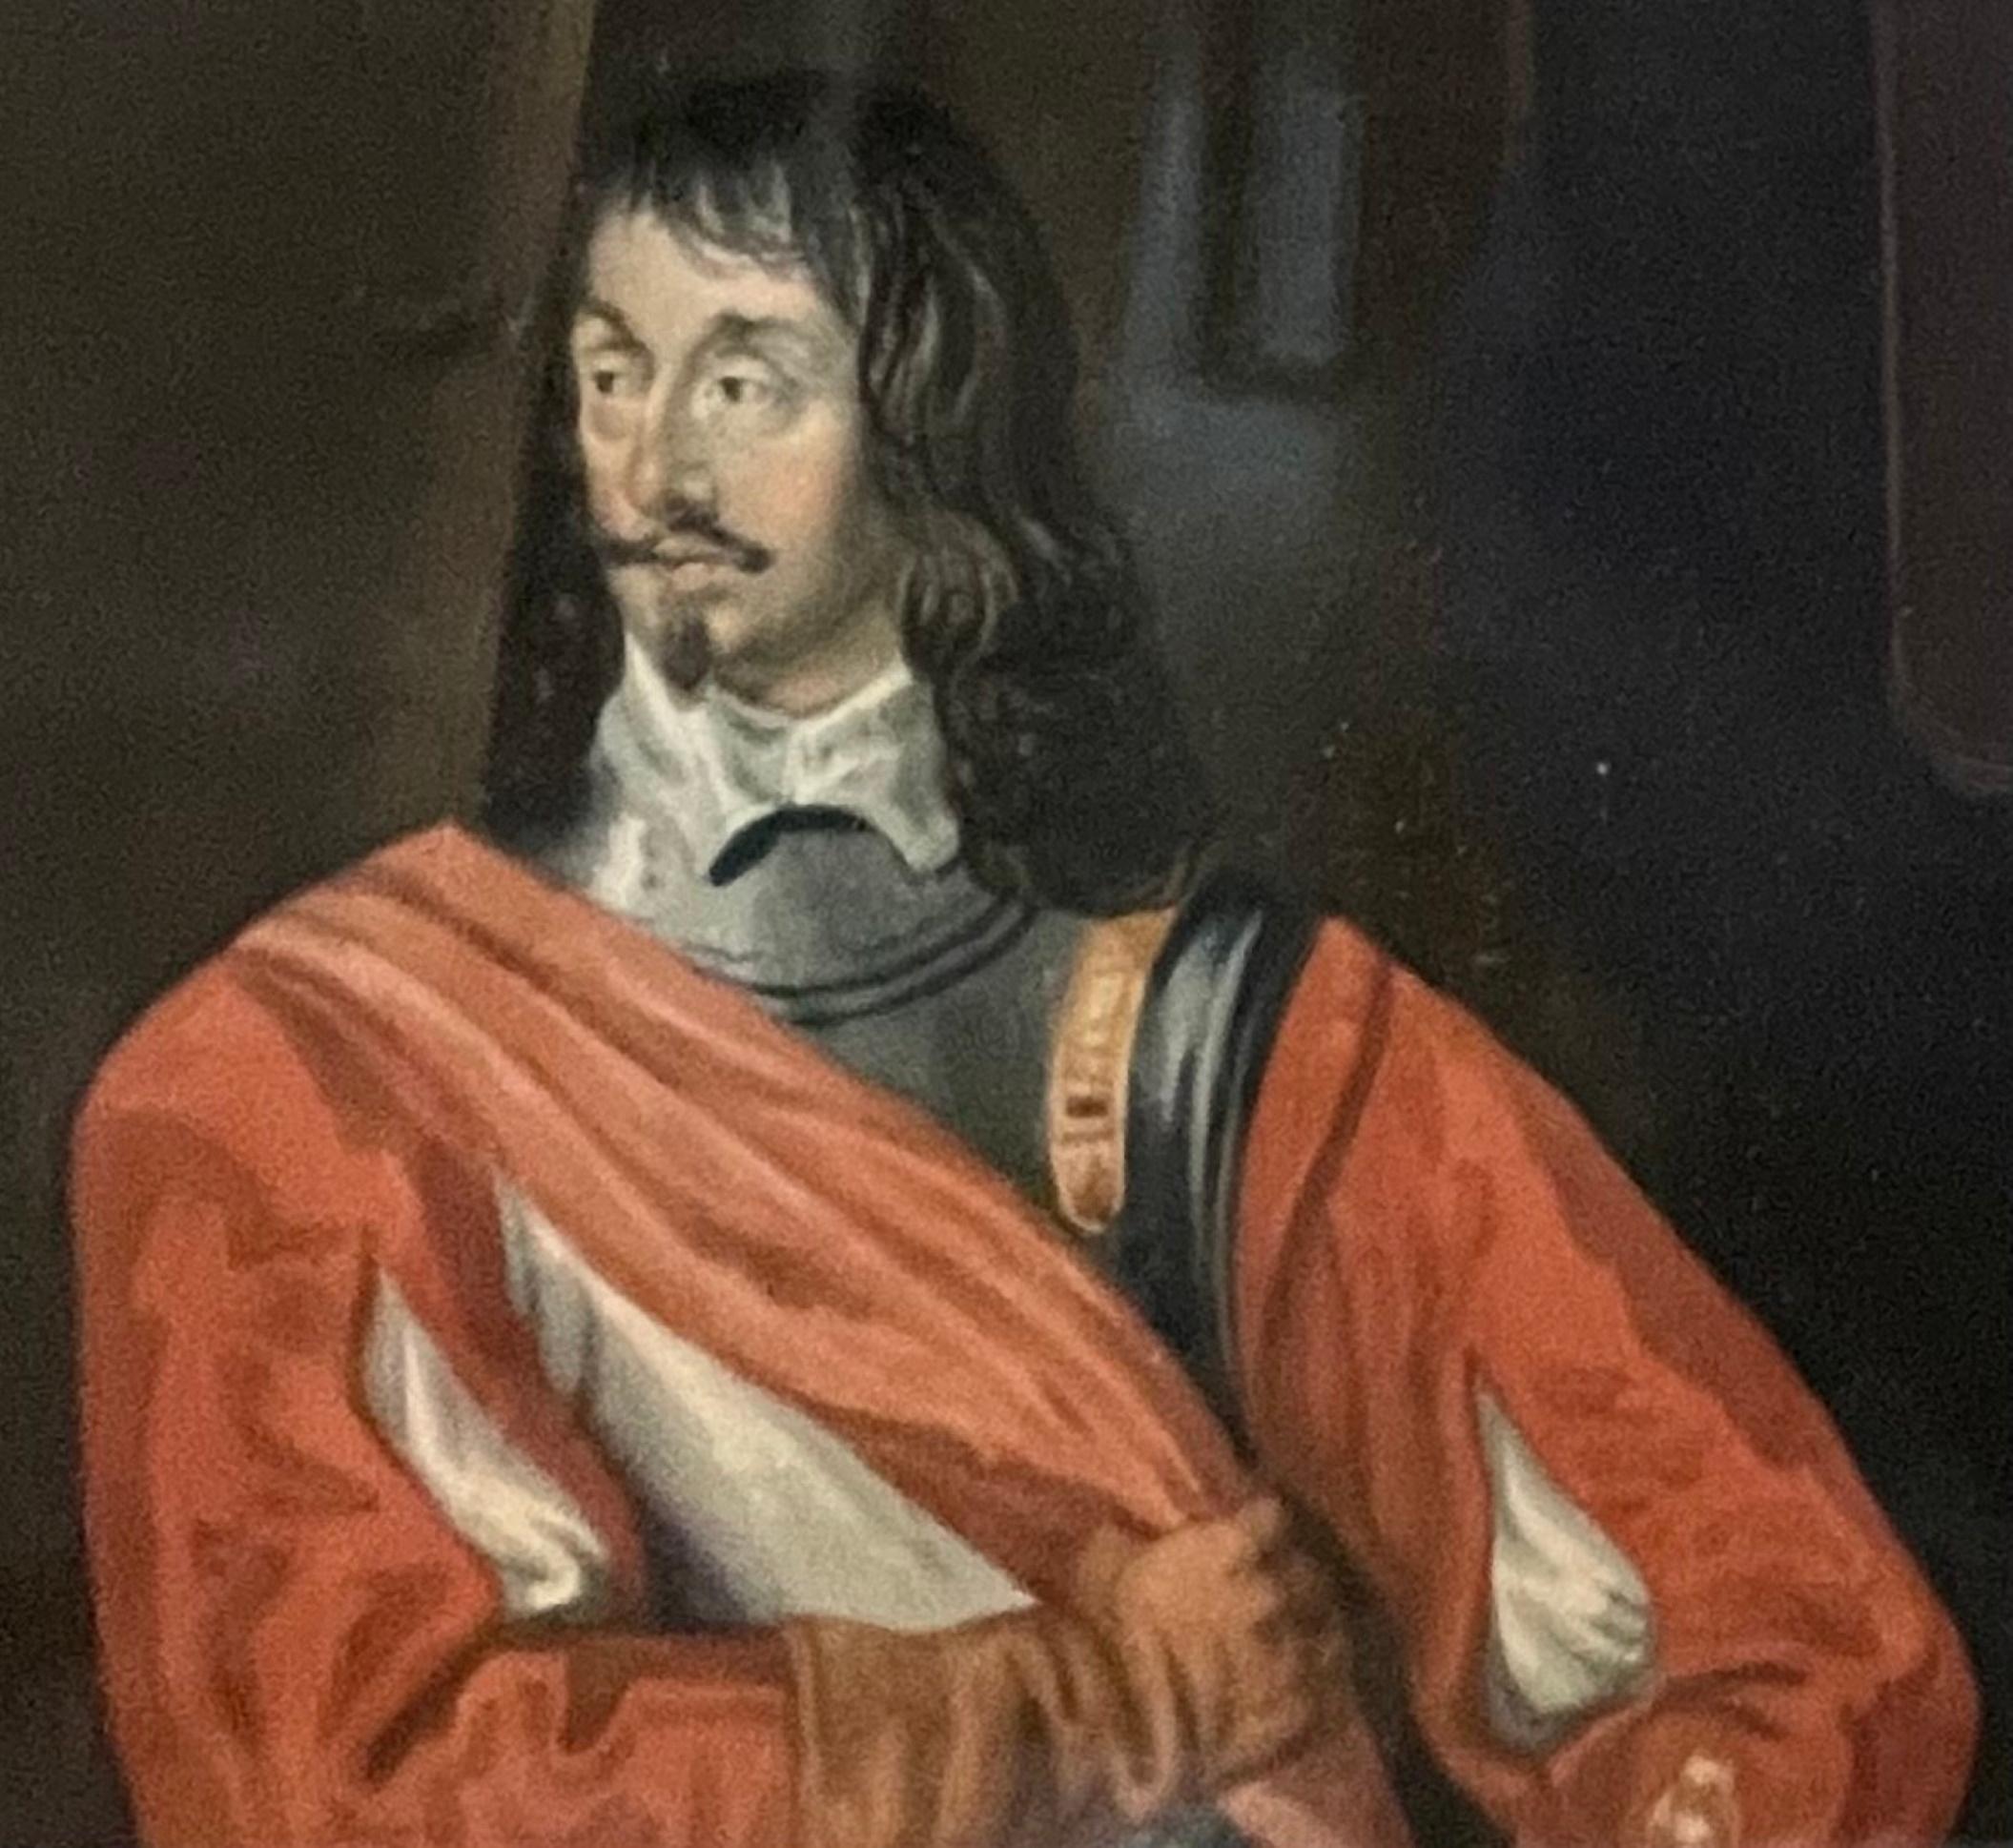 portrait de Sir John Mennes à l'aquarelle du 18ème siècle d'après Anthony van Dyck

Ce portrait à l'aquarelle de petite taille du 18e siècle, d'excellente qualité, est très proche de la peinture originale de l'artiste baroque flamand, Anthony van